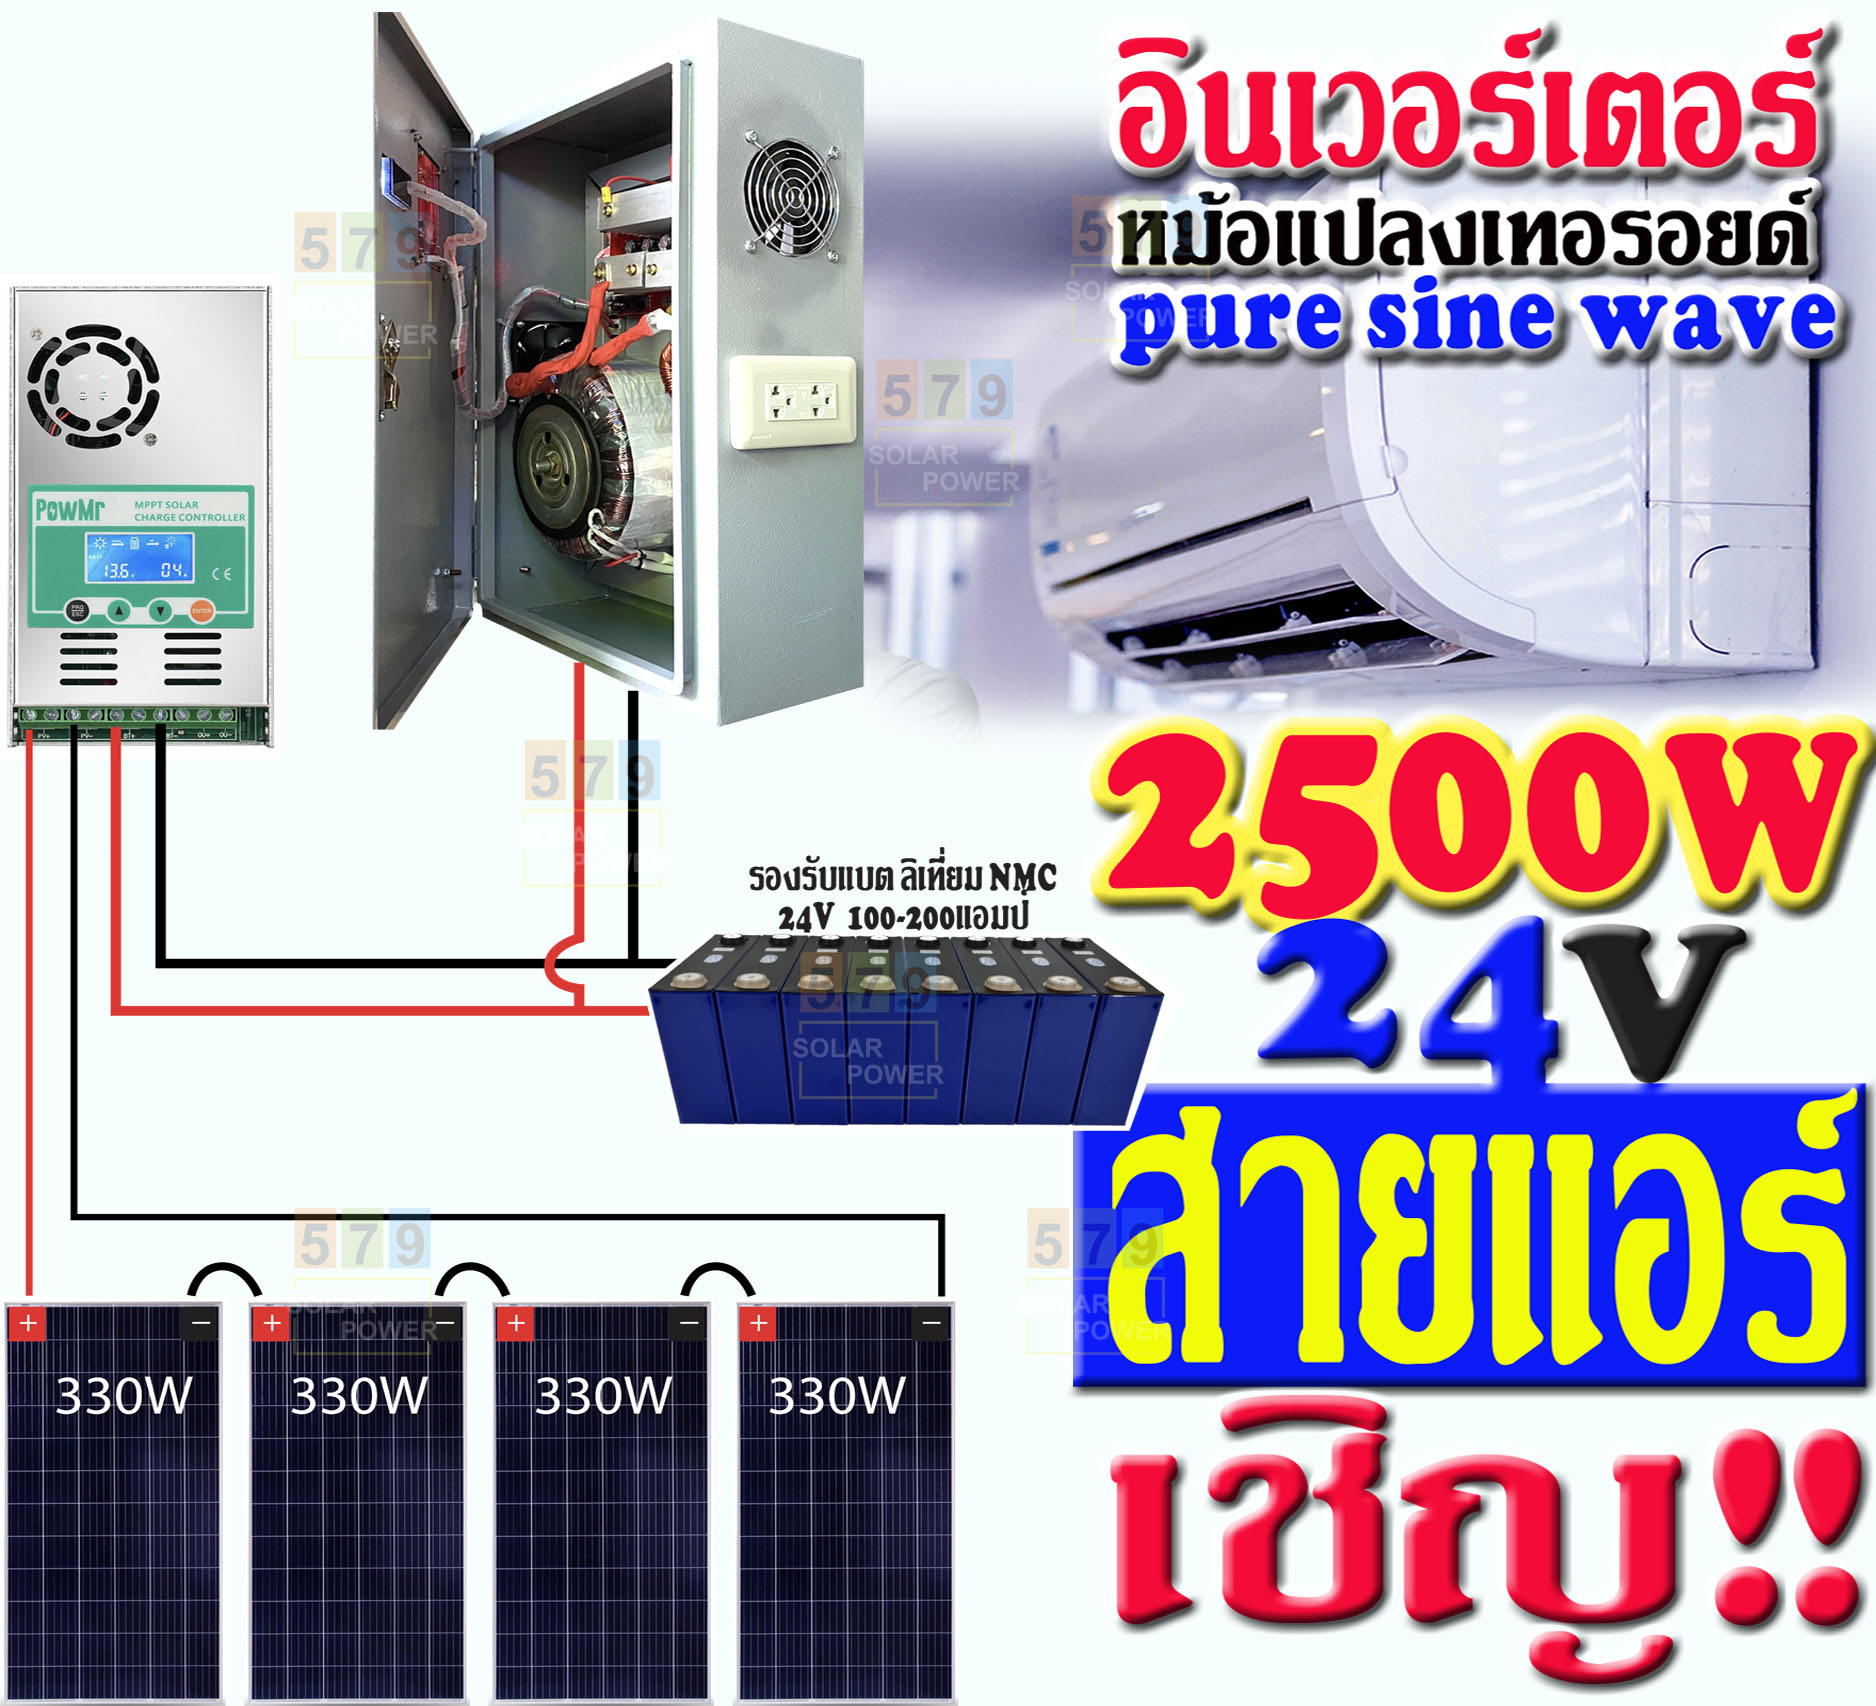 อินเวอร์เตอร์เพียวซาย หม้อแปลงเทอรอยด์ 2400W 24V   เพียวไซน์เวฟ ล้าน%  วัตต์เต็มๆ แรงๆ  รุ่นใหม่ล่าสุด  ประกอบไทย ประกันศูนย์ไทย